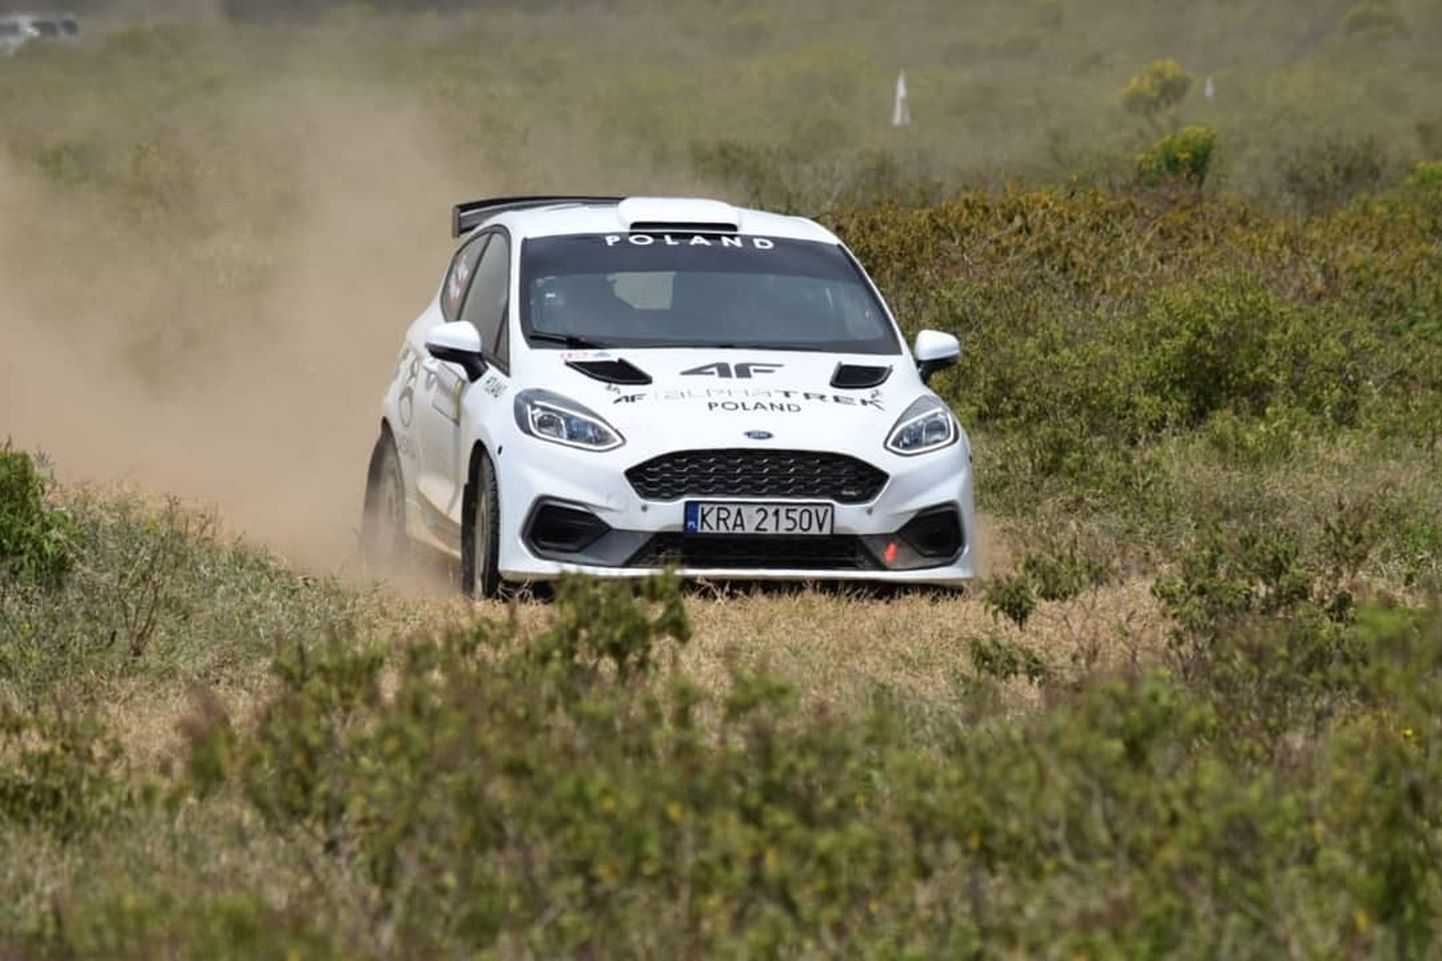 Sobieslaw Zasada Keenias Ford Fiesta Rally3 autot testimas.